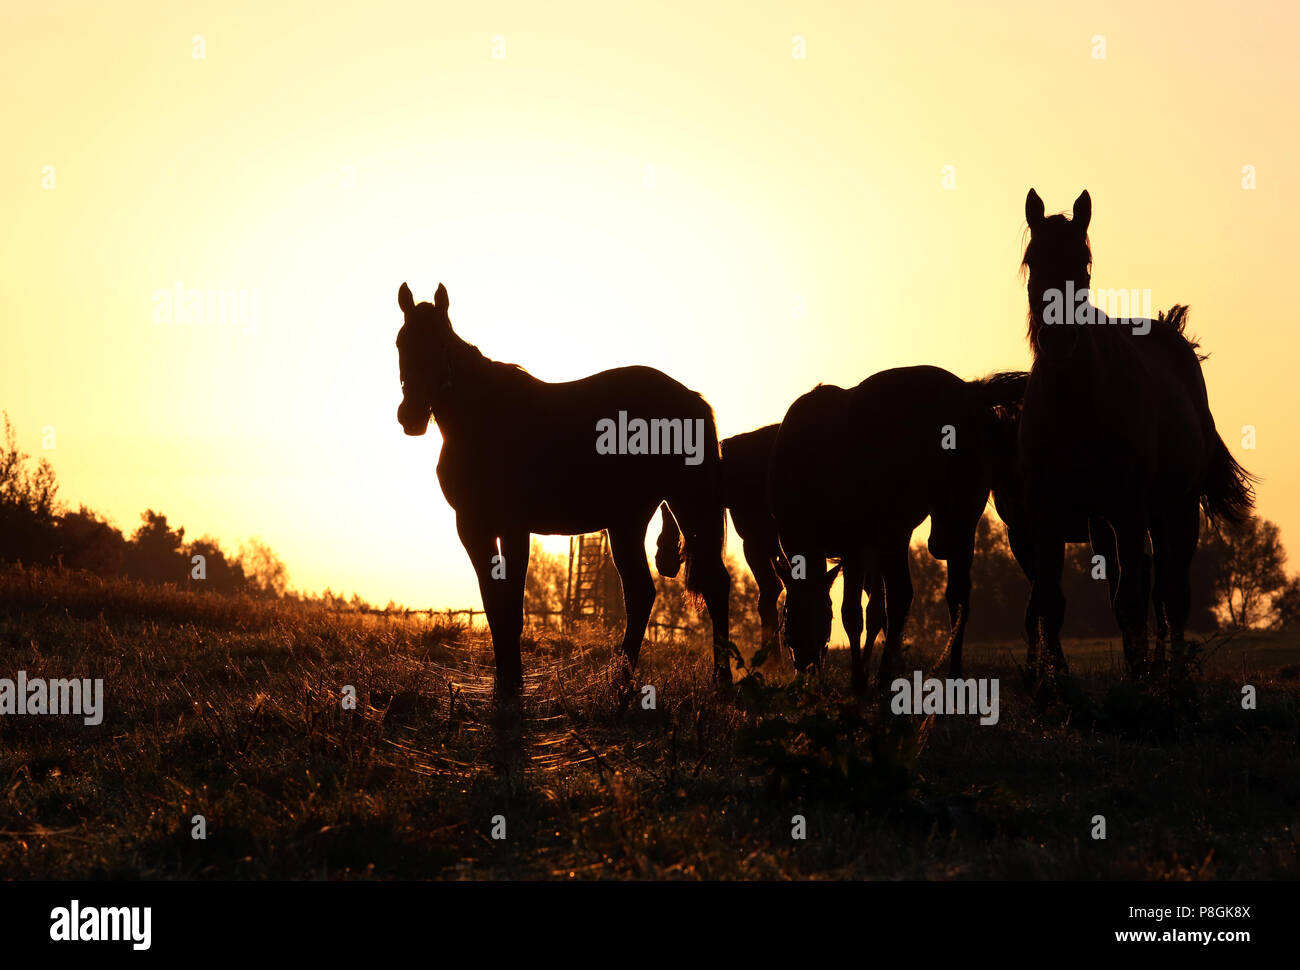 Goerlsdorf cloutés, Silhouette, les chevaux sont au pâturage au lever du soleil Banque D'Images